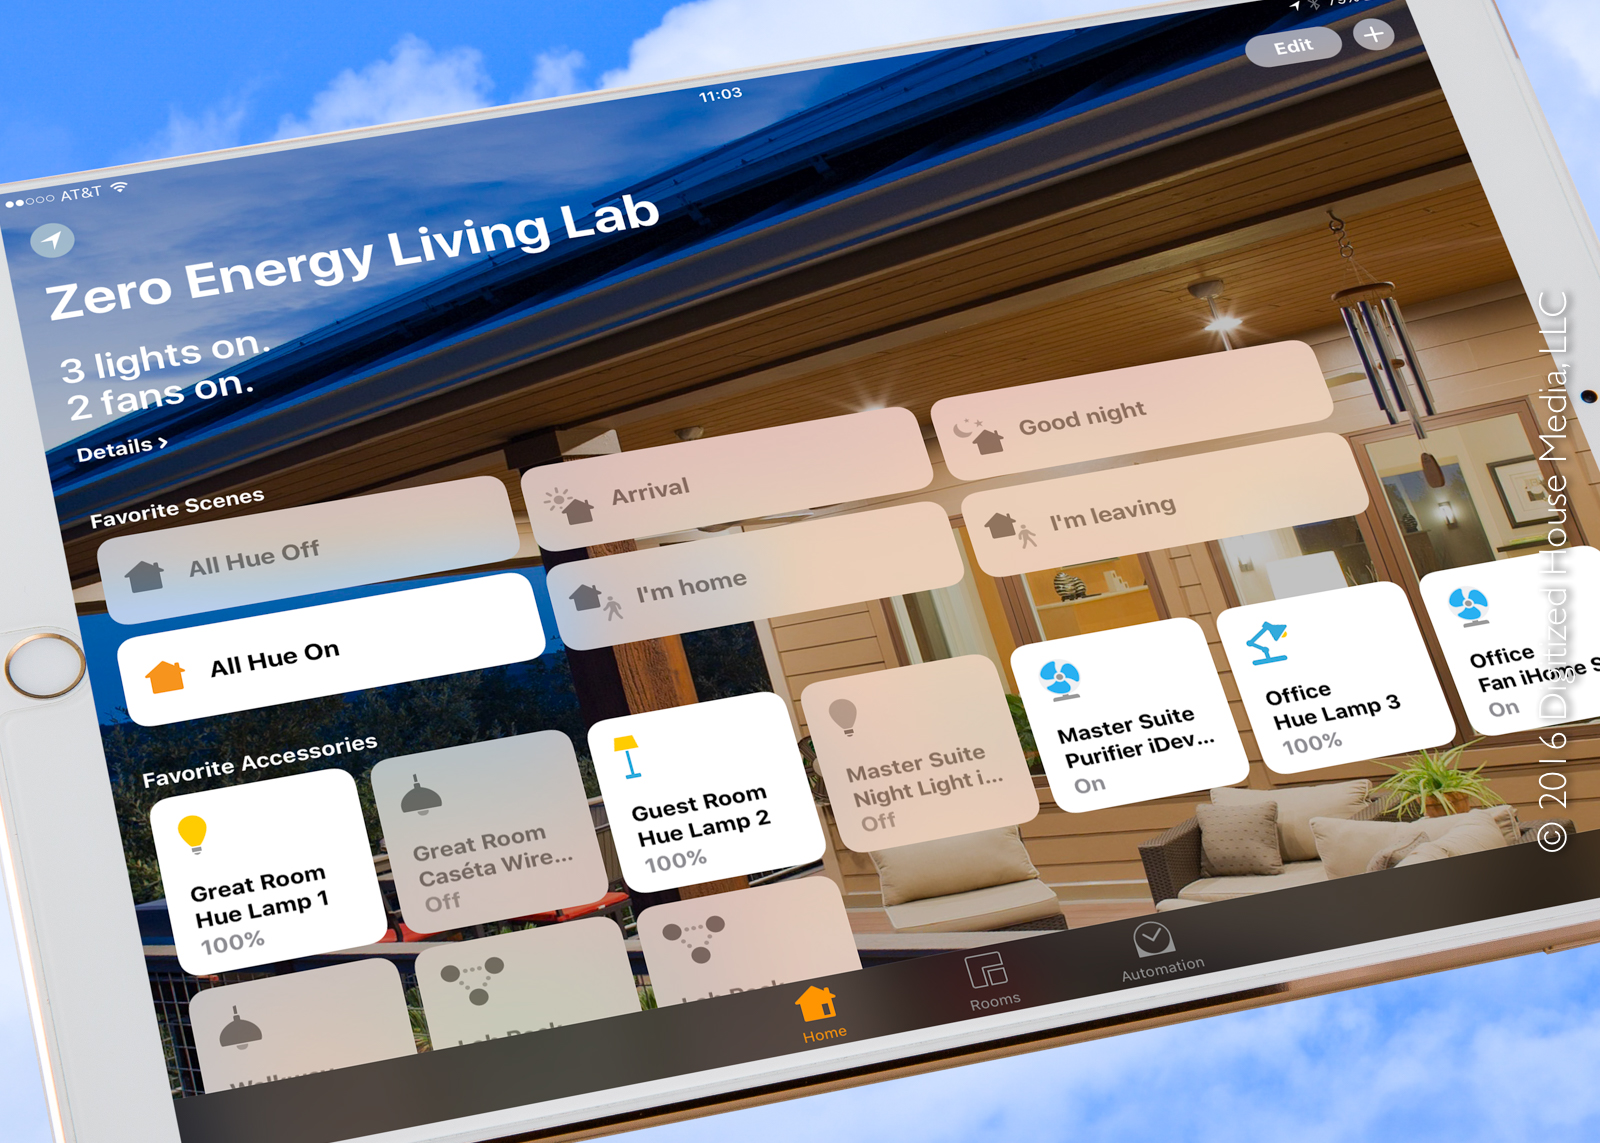 Zero Energy Living Lab Home